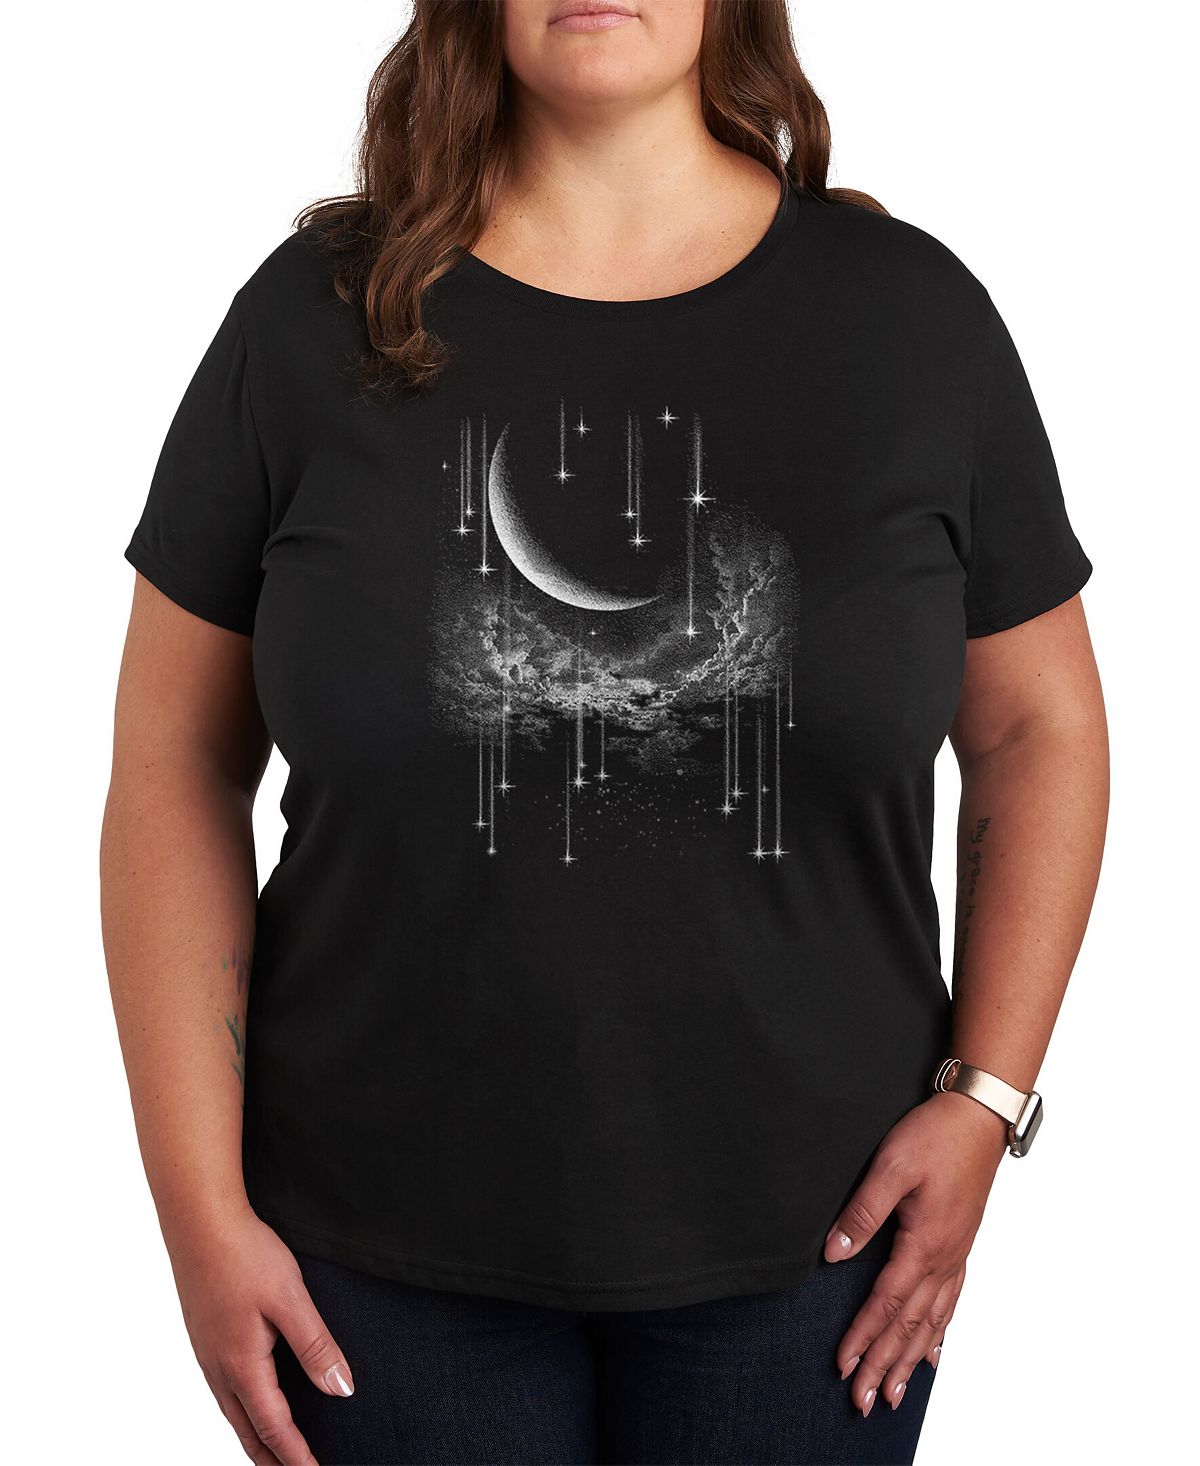 Модная футболка больших размеров с изображением небесного принта Air Waves, черный фотографии